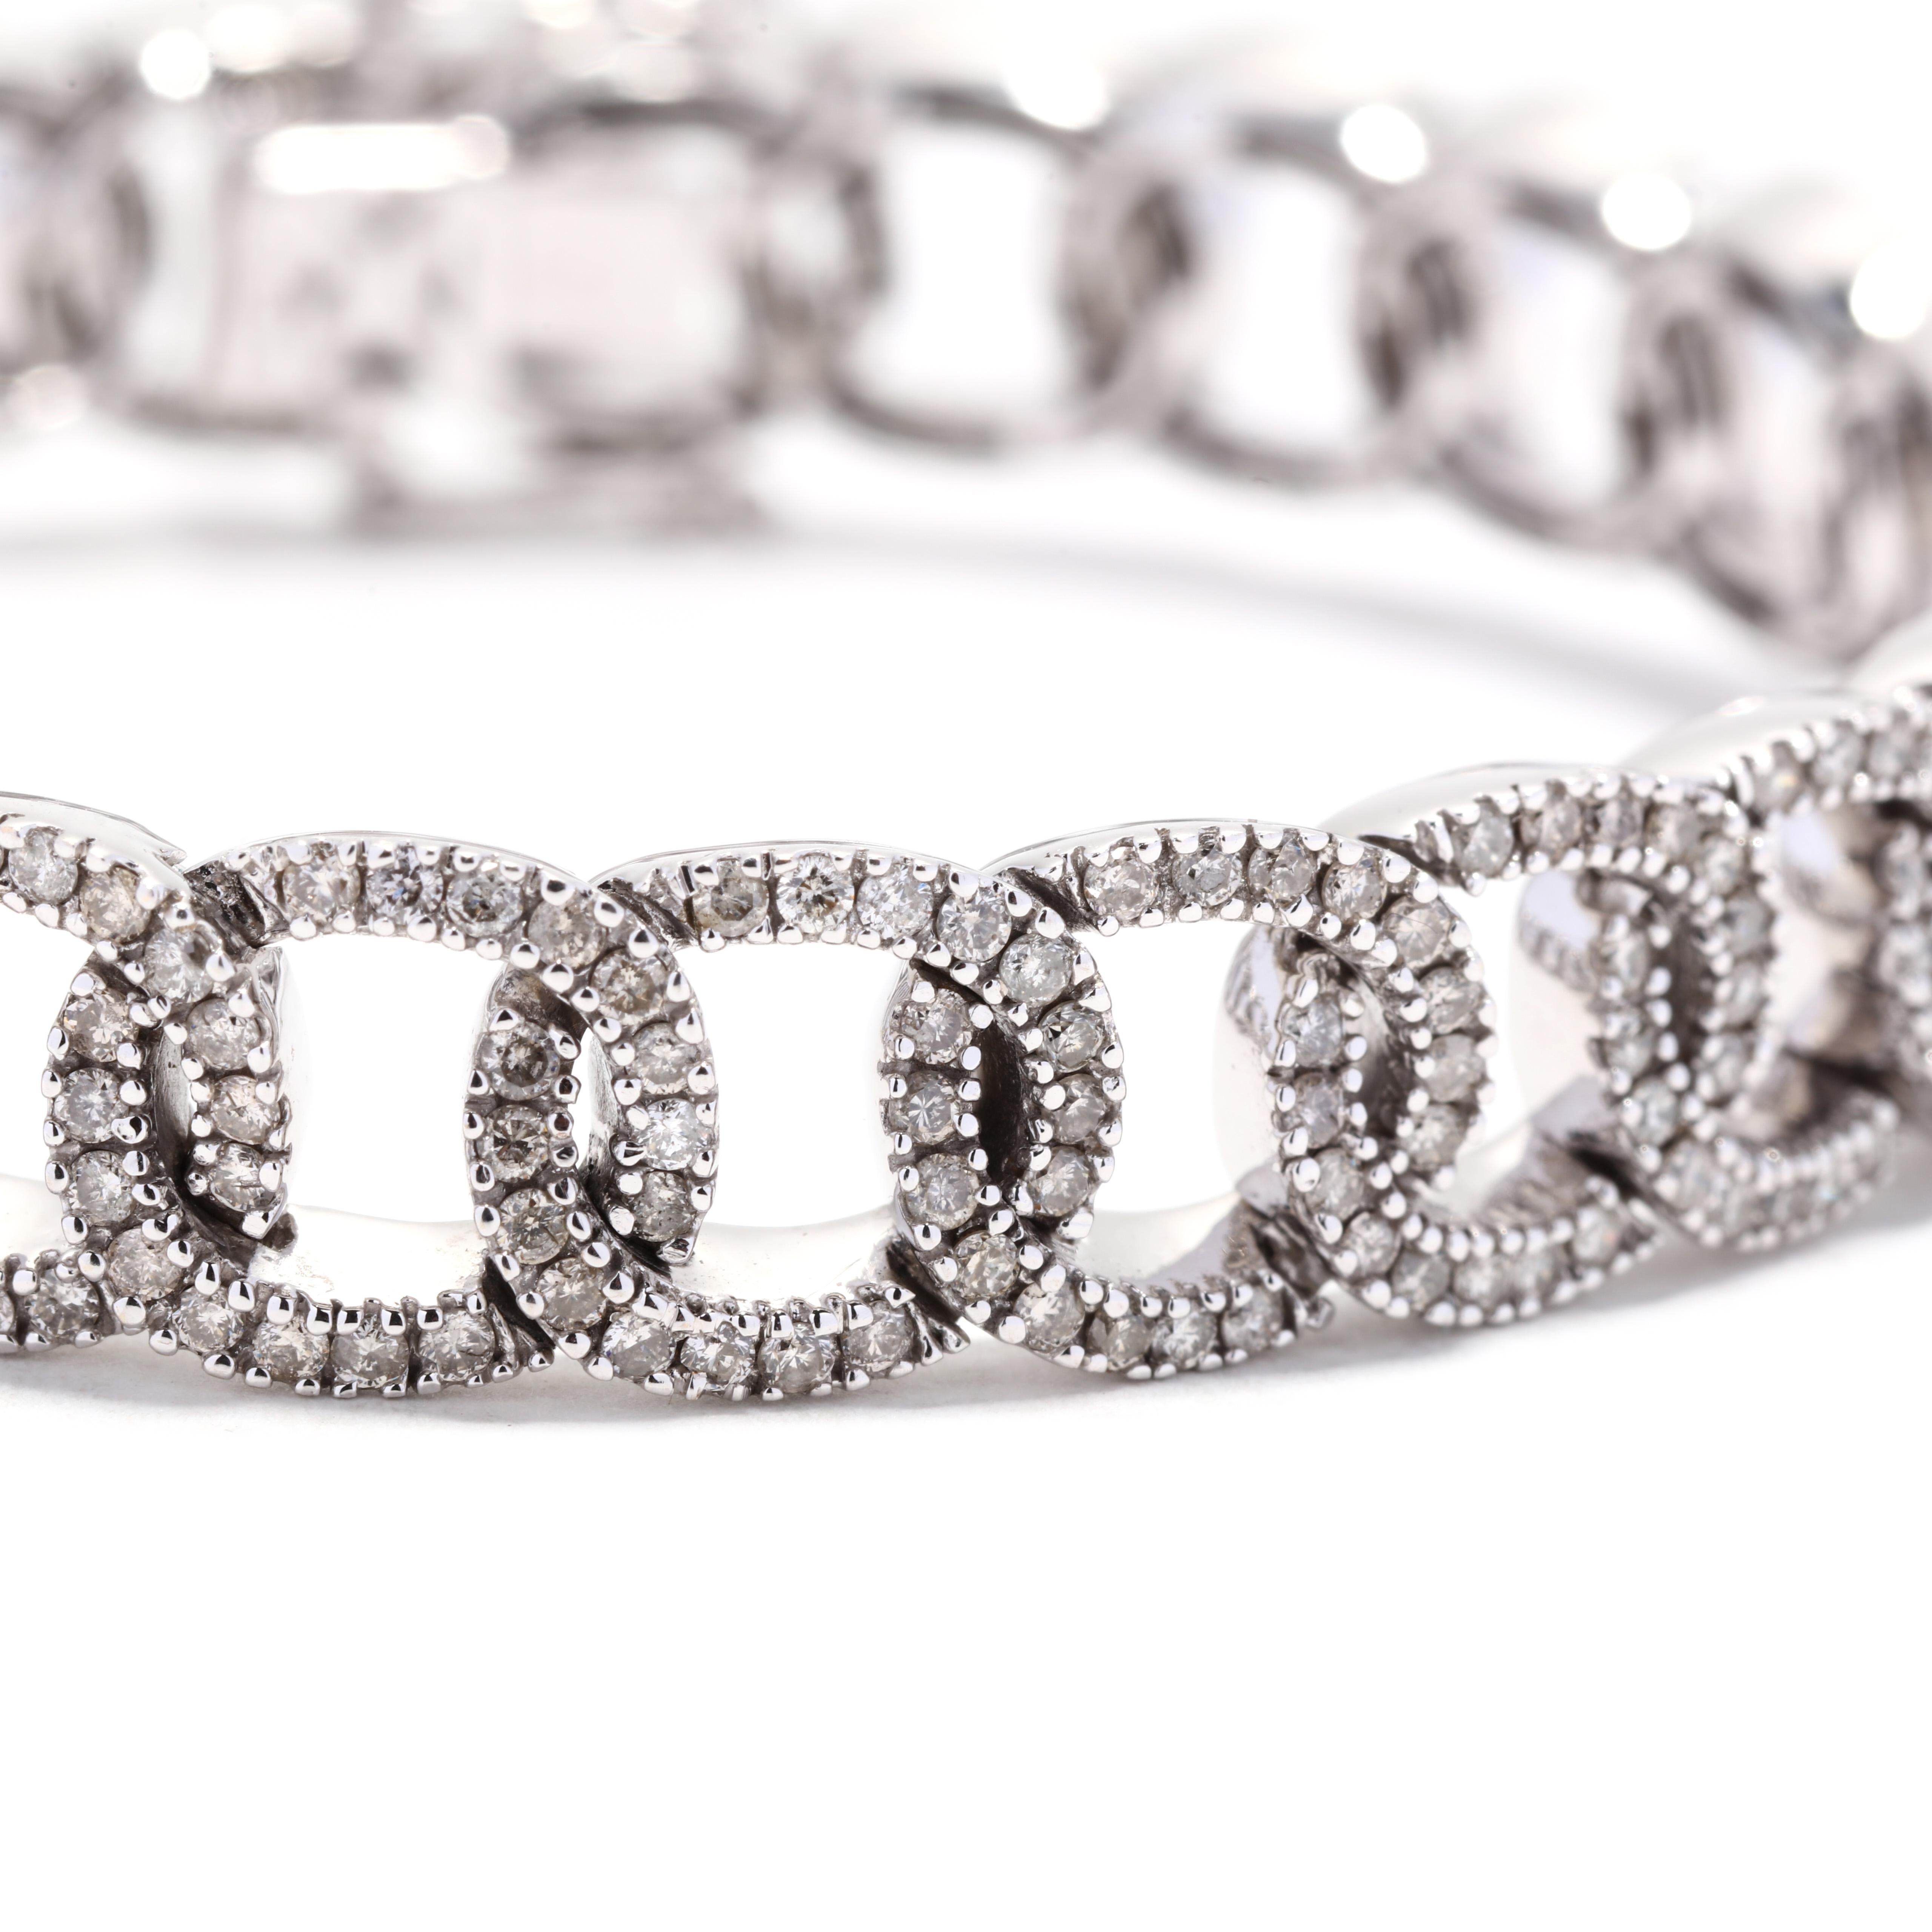 Ein Gliederarmband aus 14 Karat Weißgold mit ausgefallenen Diamanten. Dieses auffällige Diamantarmband besteht aus flachen, offenen, ovalen Gliedern mit pavégefassten, runden Diamanten im Brillantschliff mit einem Gesamtgewicht von 4,13 Karat und